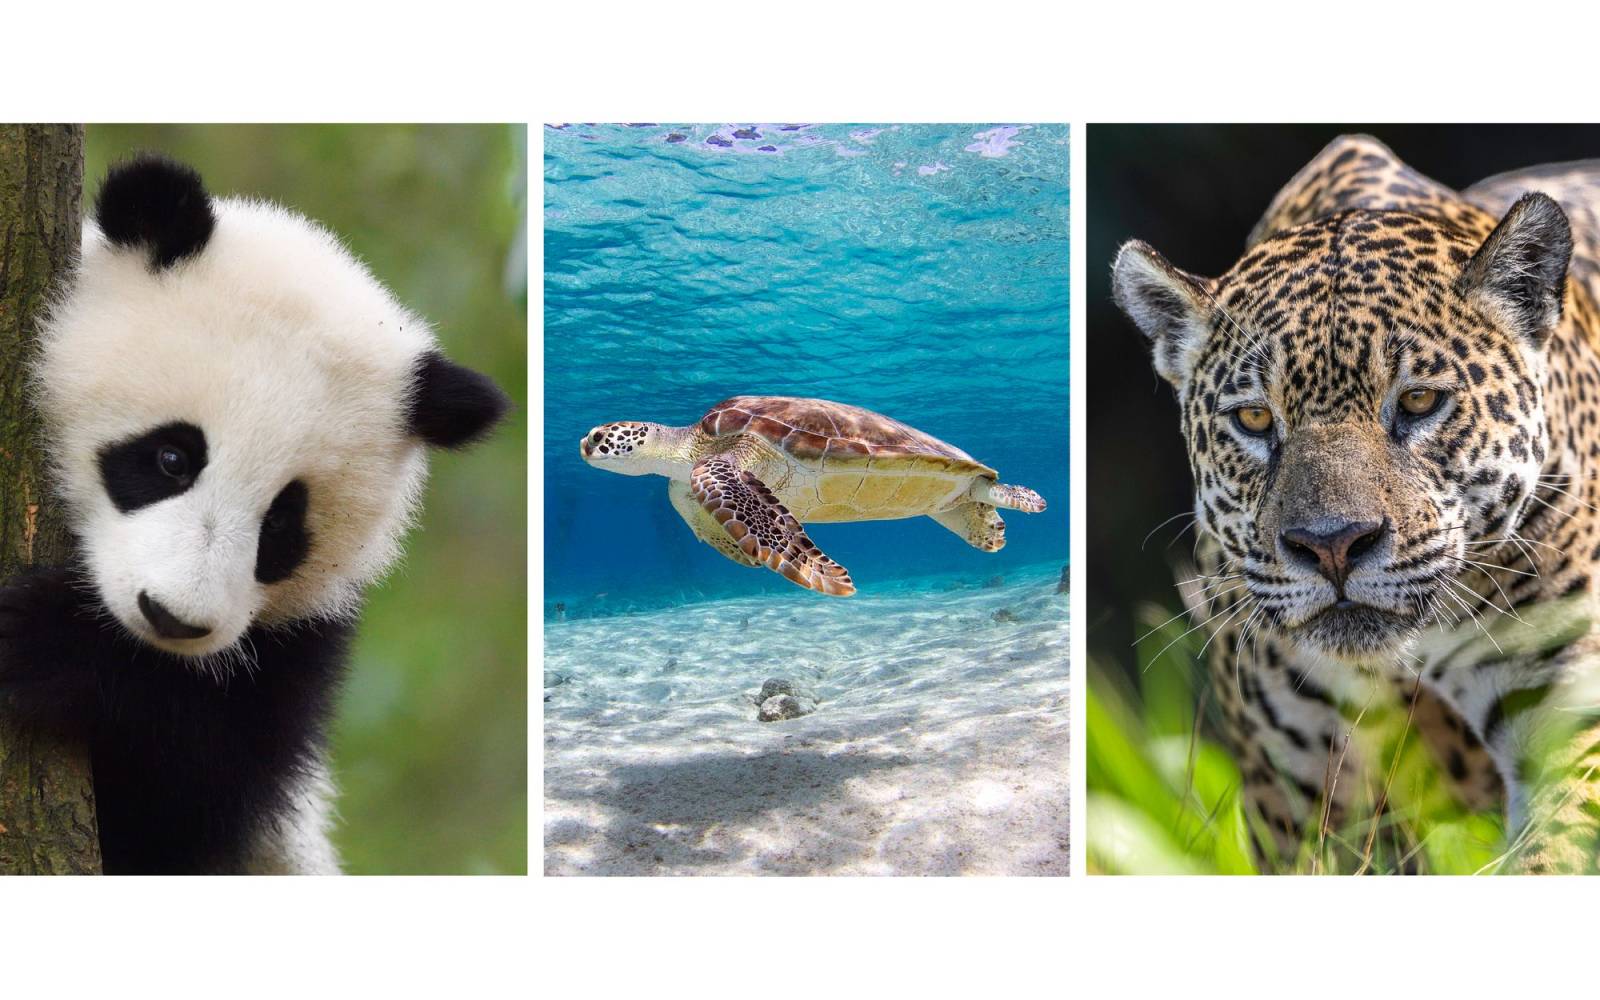 Grosser Panda, Meeresschildkröte und Jaguar als Collage